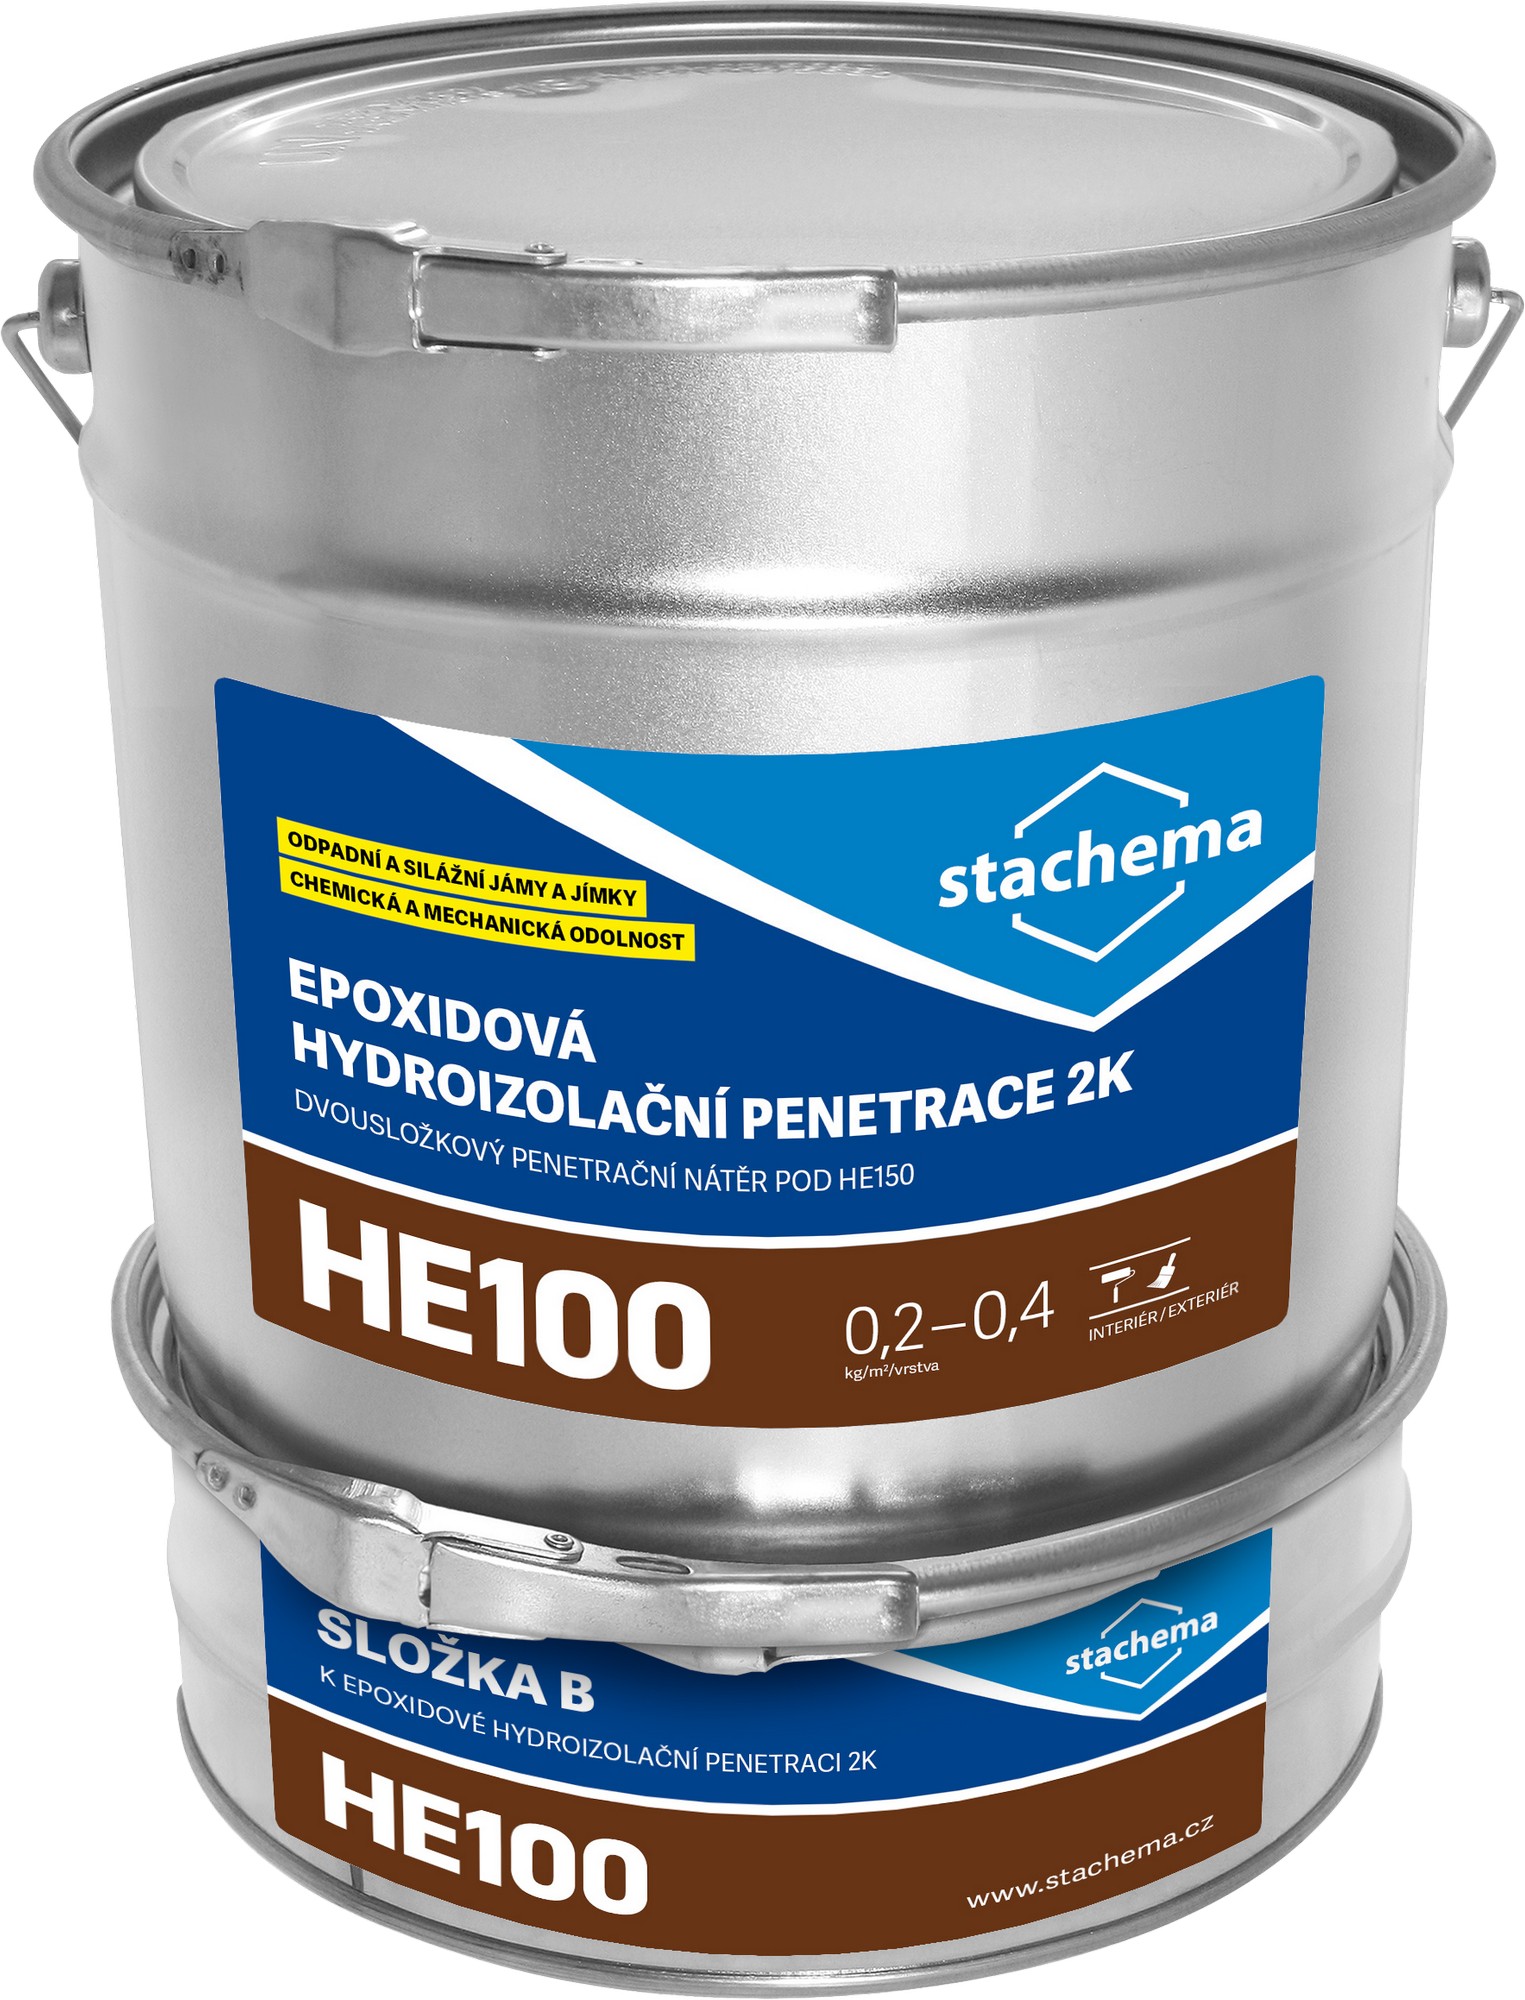 Penetrace epoxidová Stachema HE100 2k , 1 kg